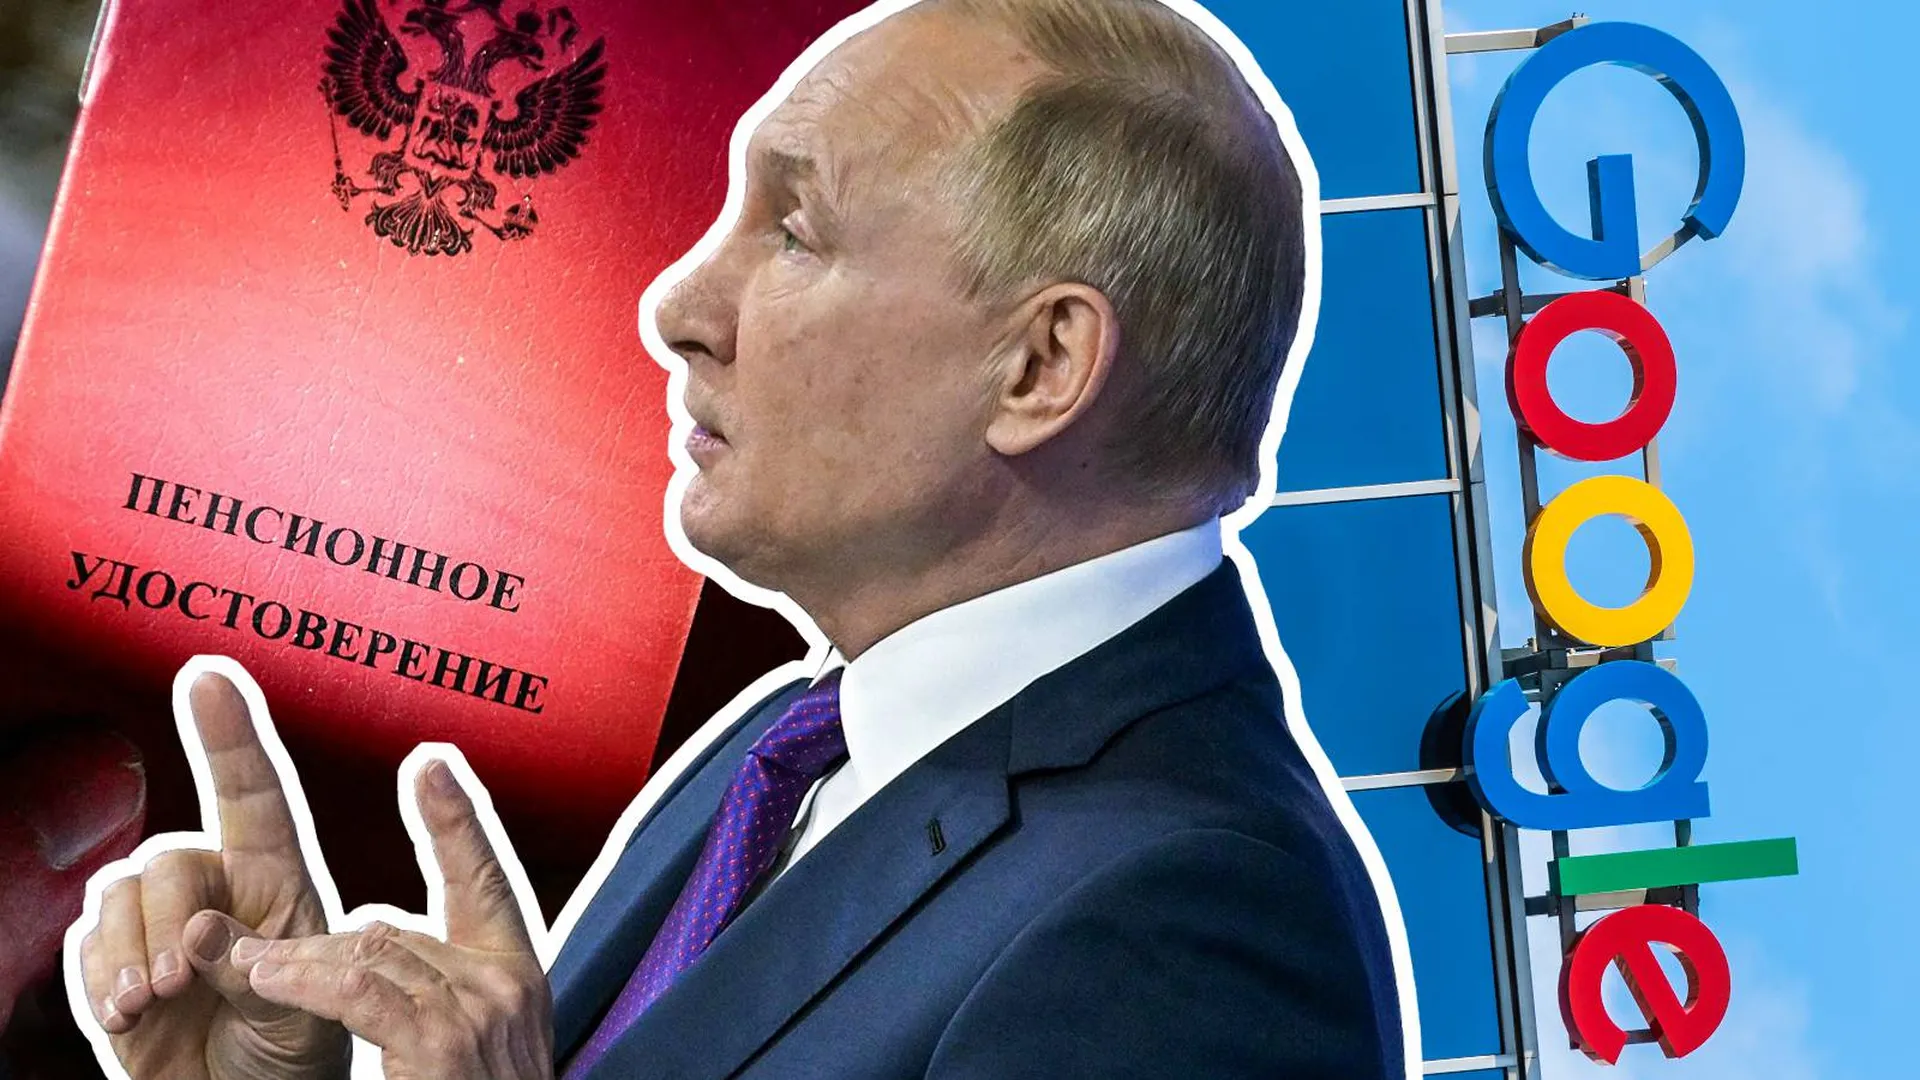 Пресс-конференция Путина, выплаты россиянам в 2022 году, штрафы IT-гигантов. Неделя в фотогалерее